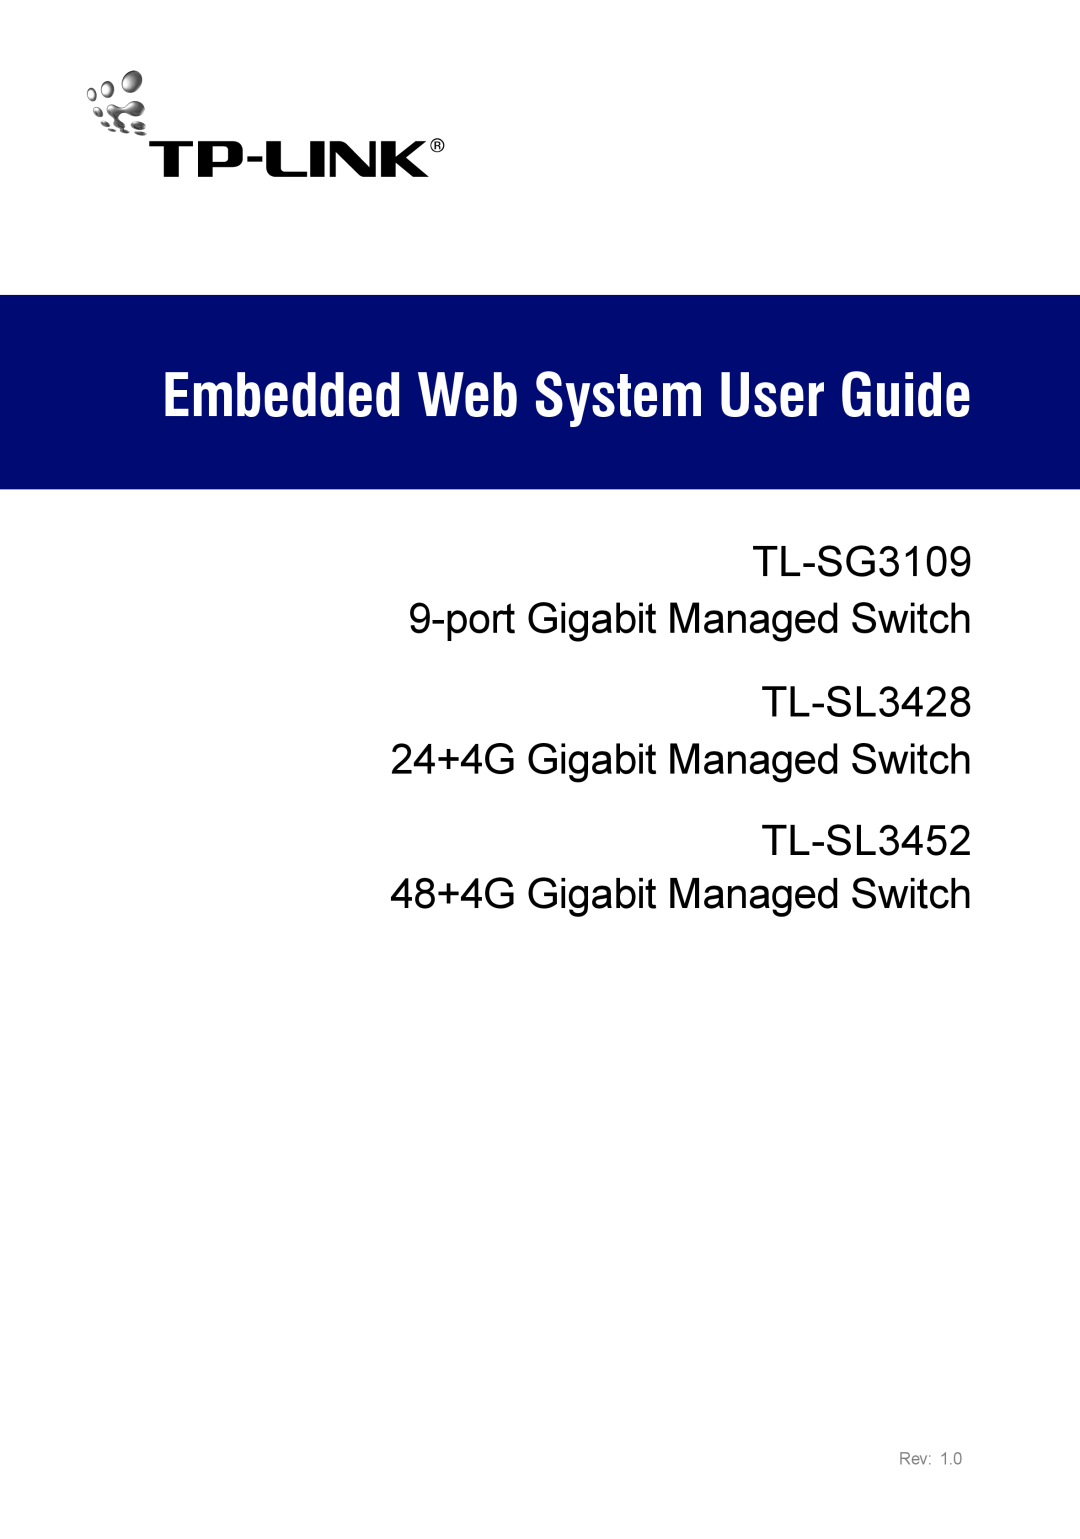 TP-Link TL-SL3452 manual Embedded Web System User Guide, TL-SG3109 9-port Gigabit Managed Switch TL-SL3428 